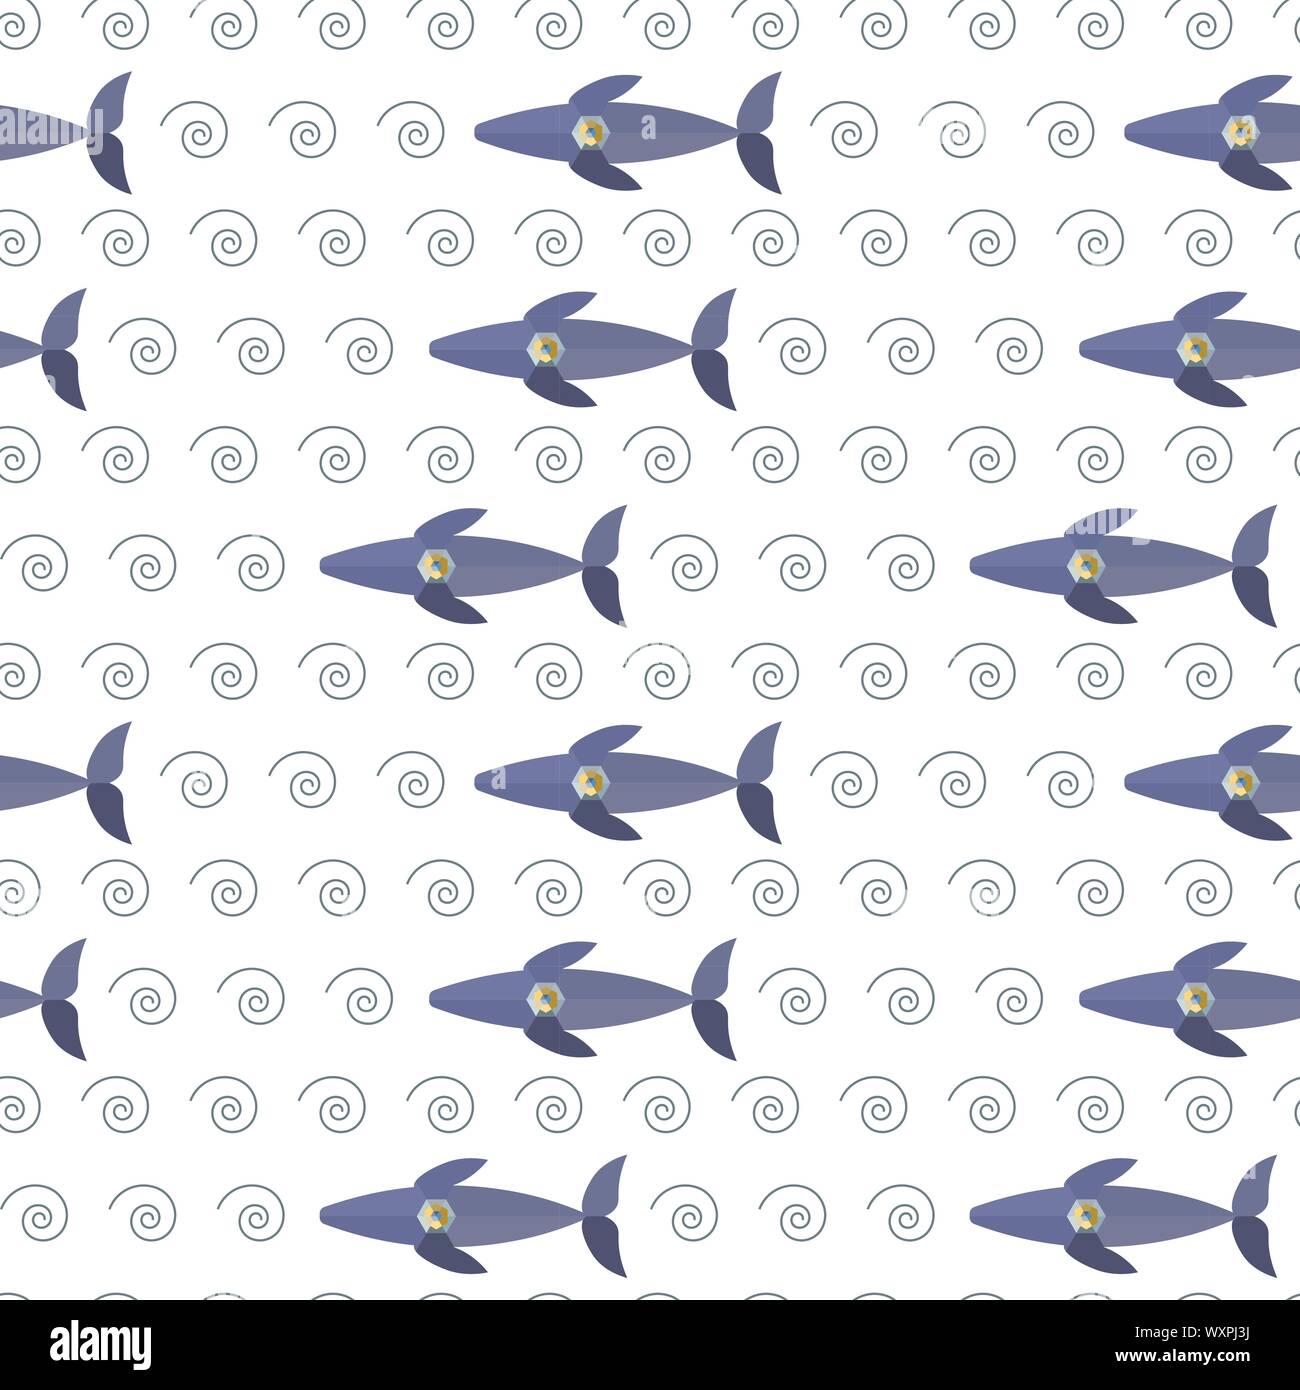 Modèle logique de baleines colorées avec le mécanicien du cœur sur fond blanc. Low poly imitation, peuvent être imprimés sur textile, papier peint, papier d'emballage, cartes de vœux, décoration de mariage, etc. L'illustration vectorielle. EPS10 Illustration de Vecteur